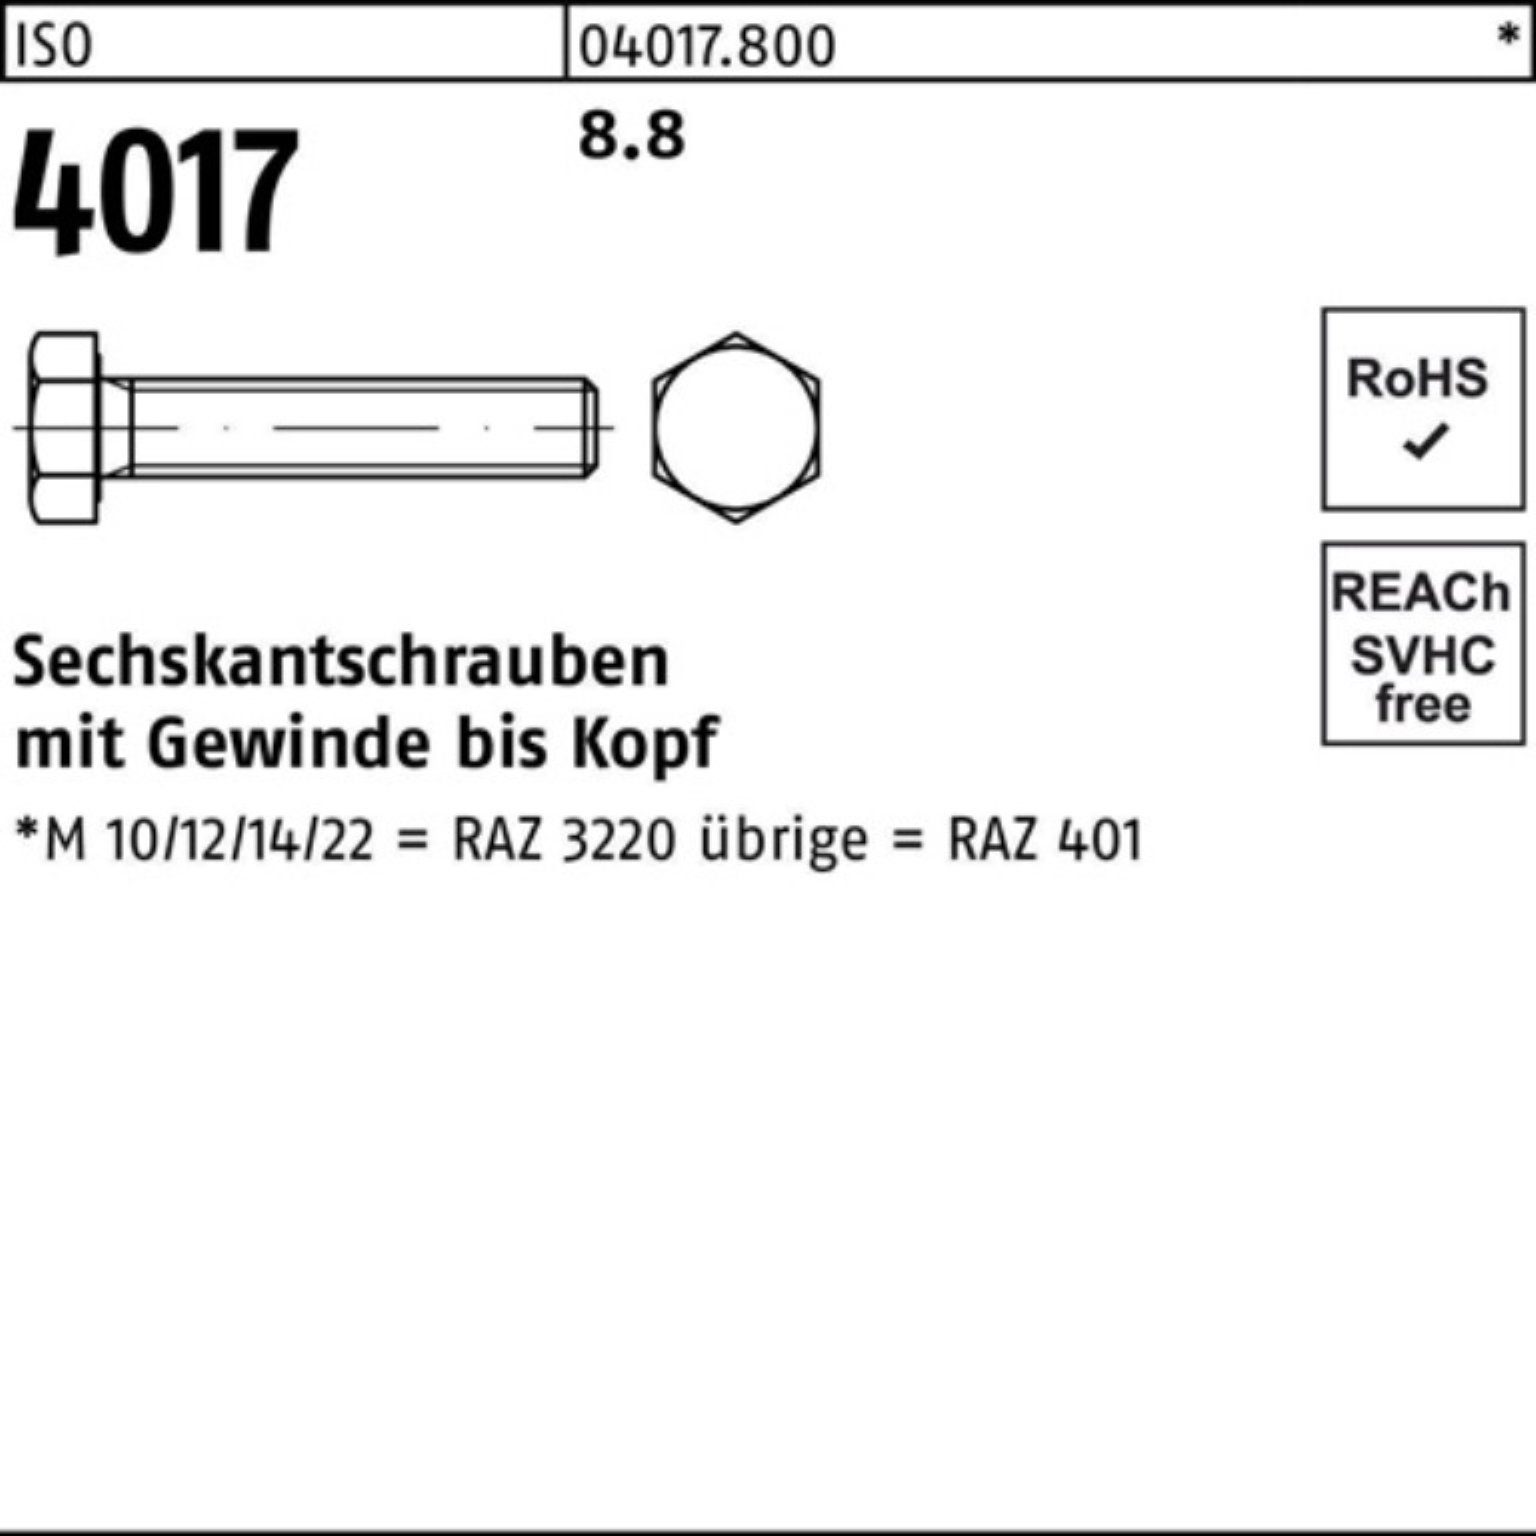 Bufab Sechskantschraube M33x 8.8 ISO ISO 4017 4017 100er Stück 1 Sechskantschraube VG 65 Pack